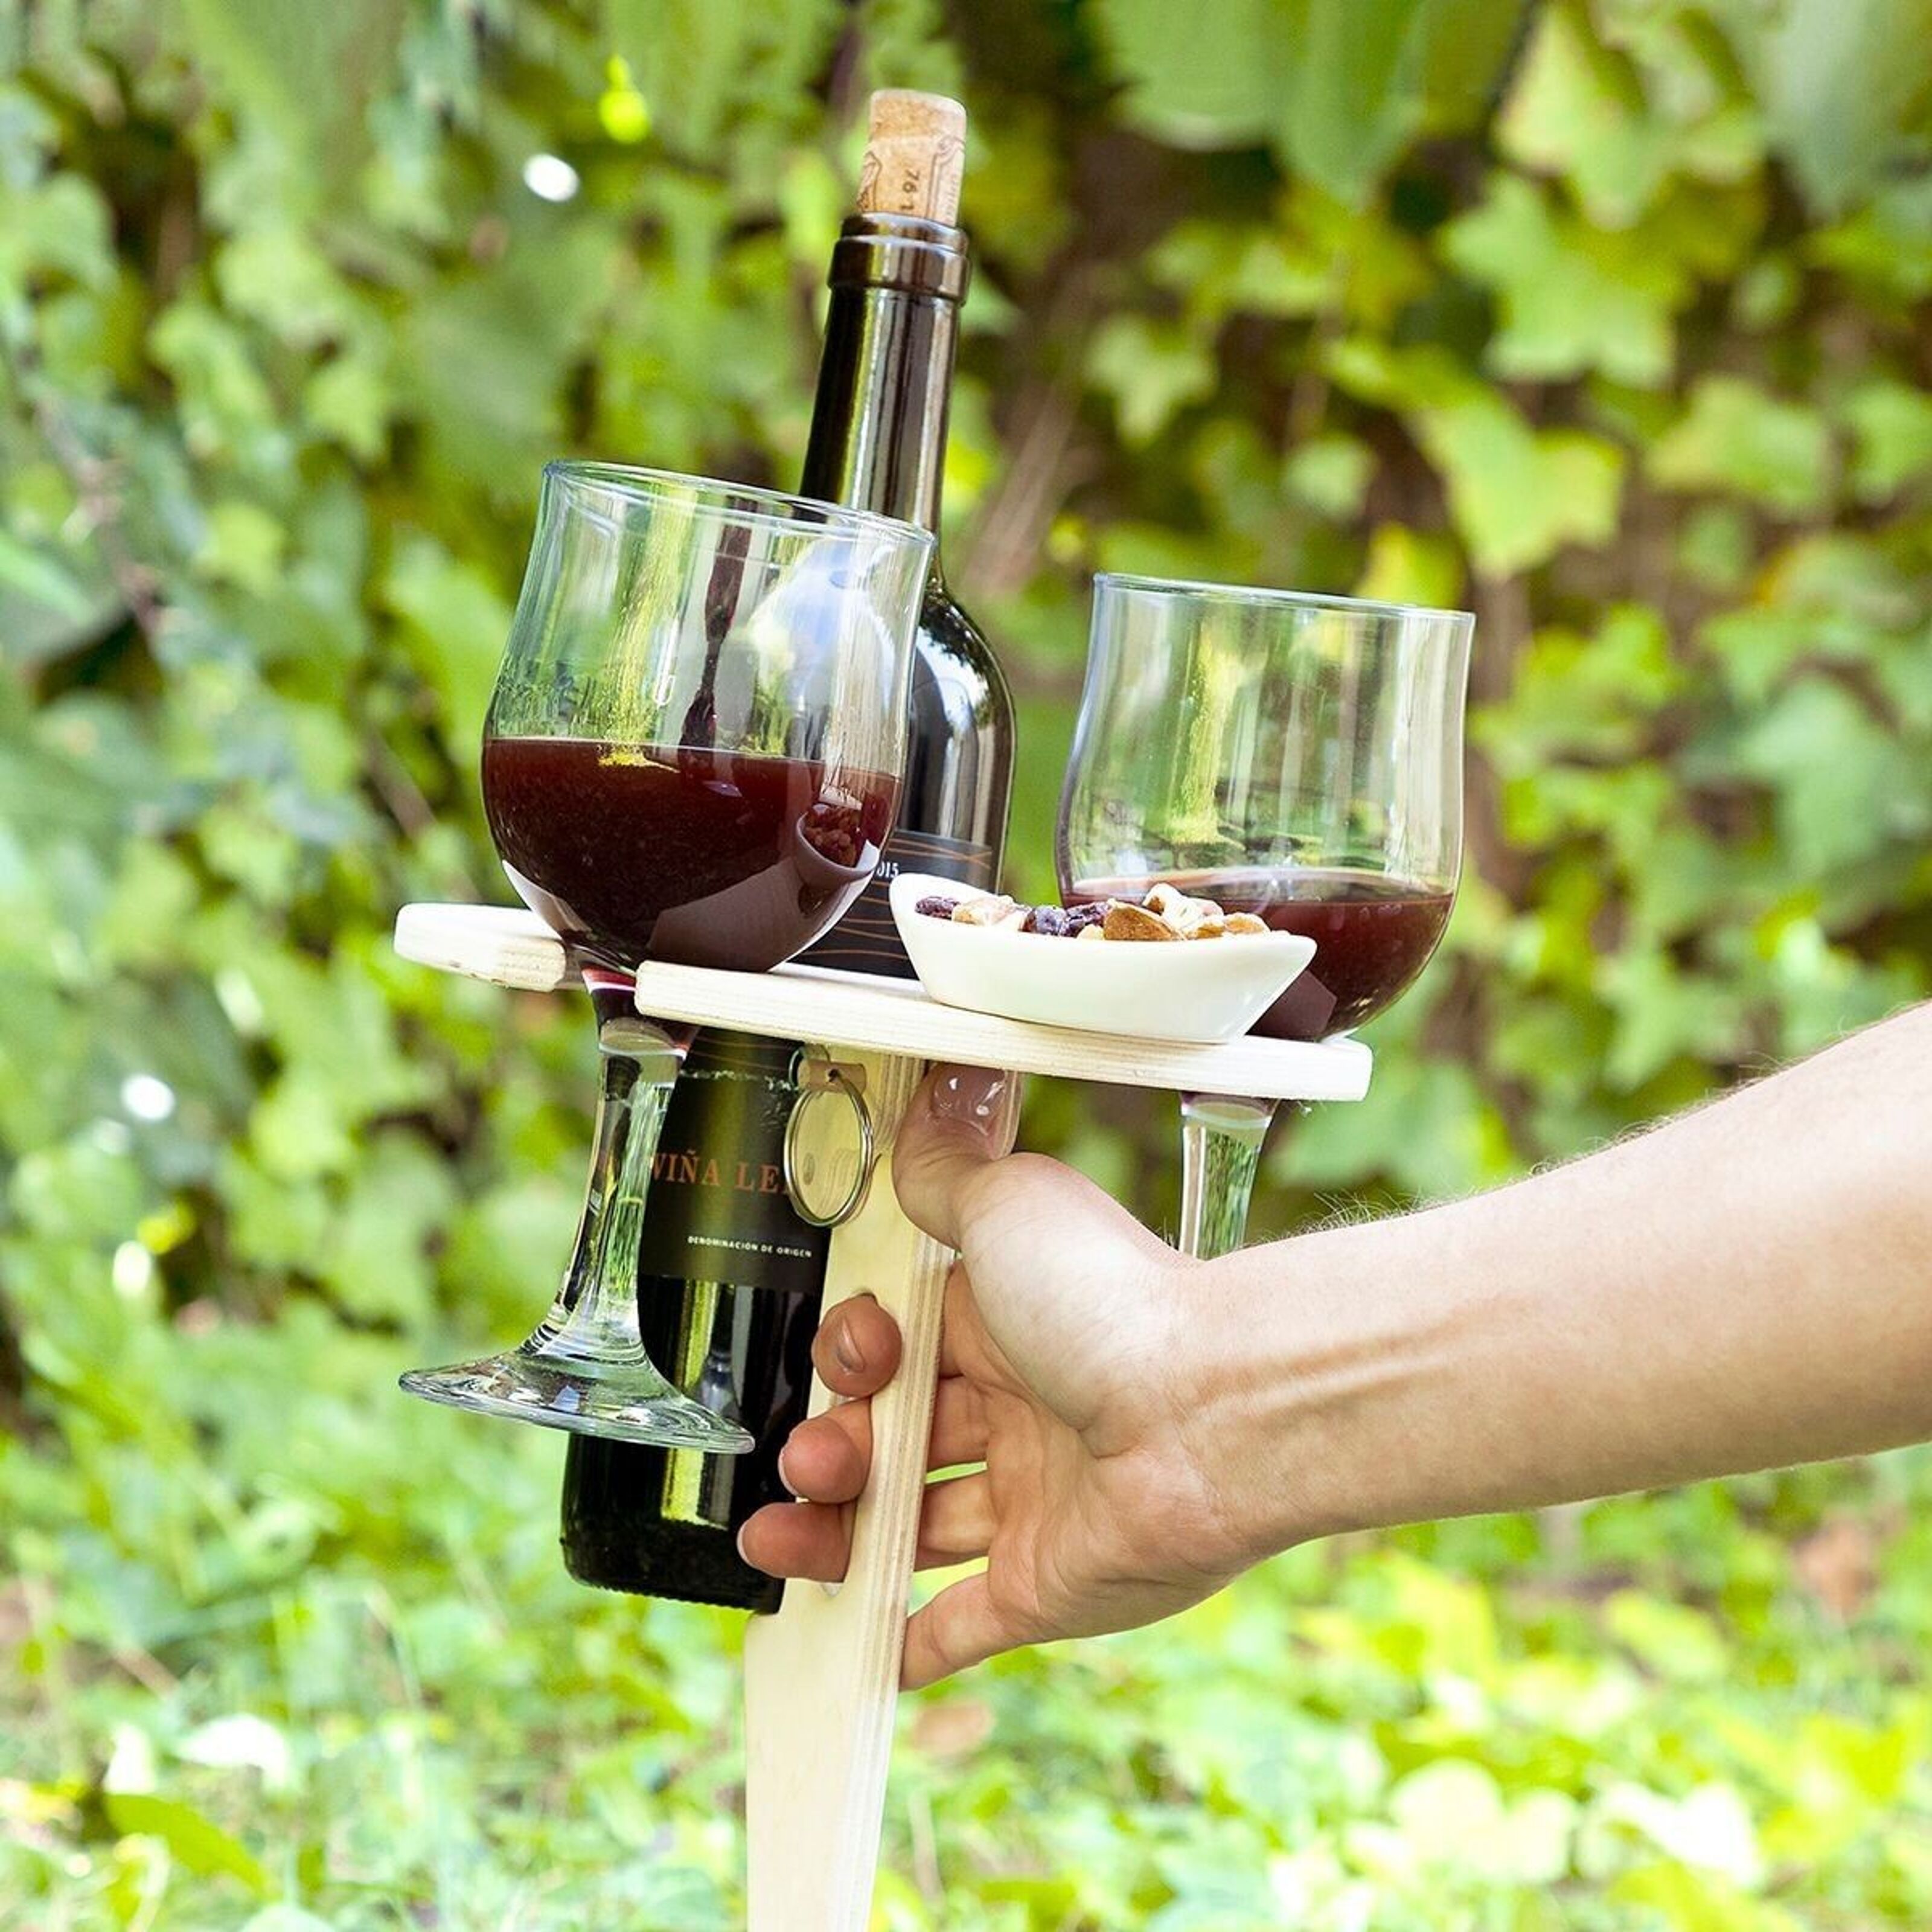 Table à vin de pique-extérieure en bois portable, table pliable Petite  table pliante Table de plage Mini table à vin extérieure